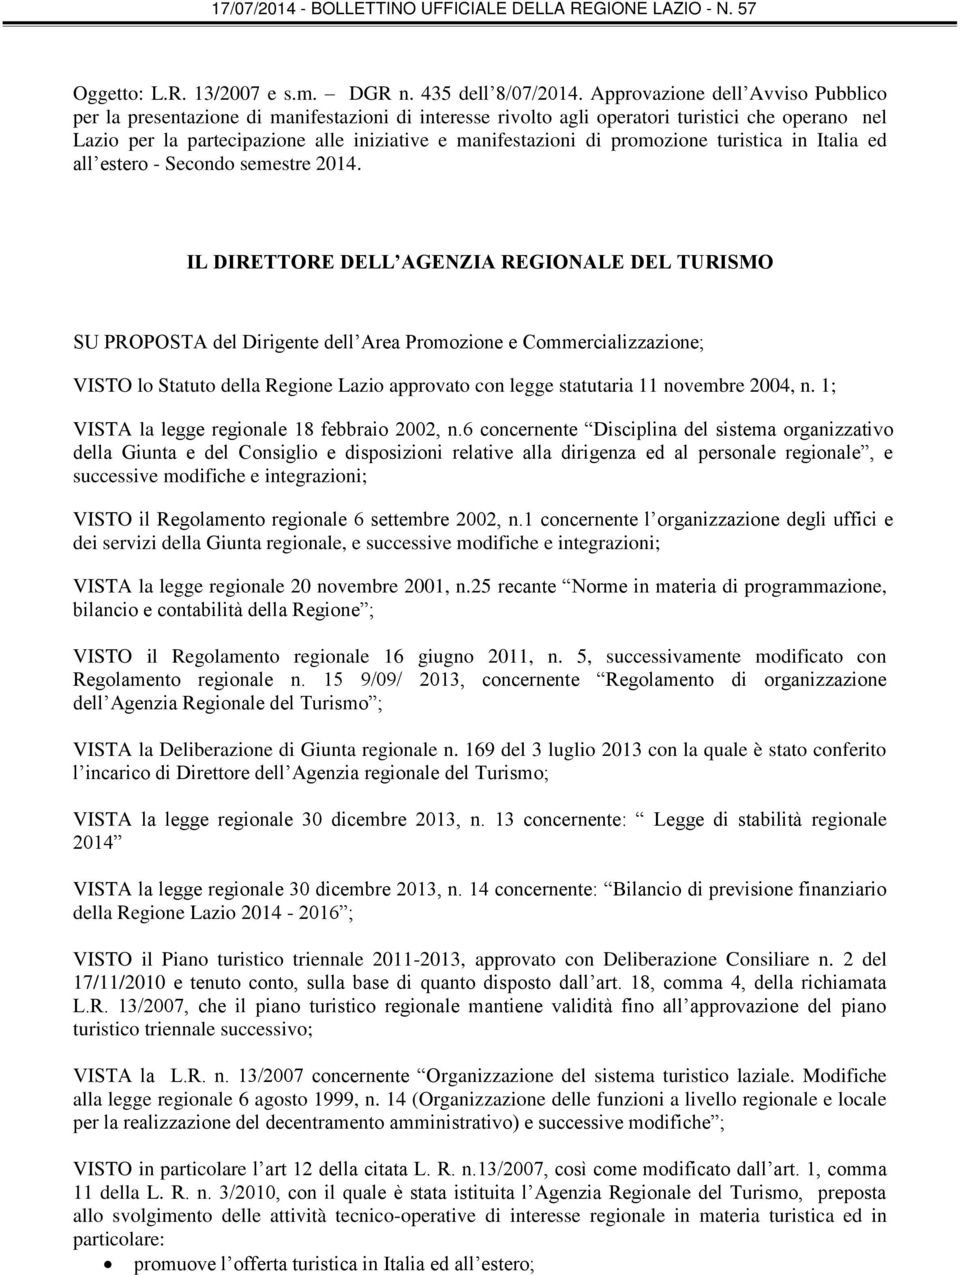 promozione turistica in Italia ed all estero - Secondo semestre 2014.